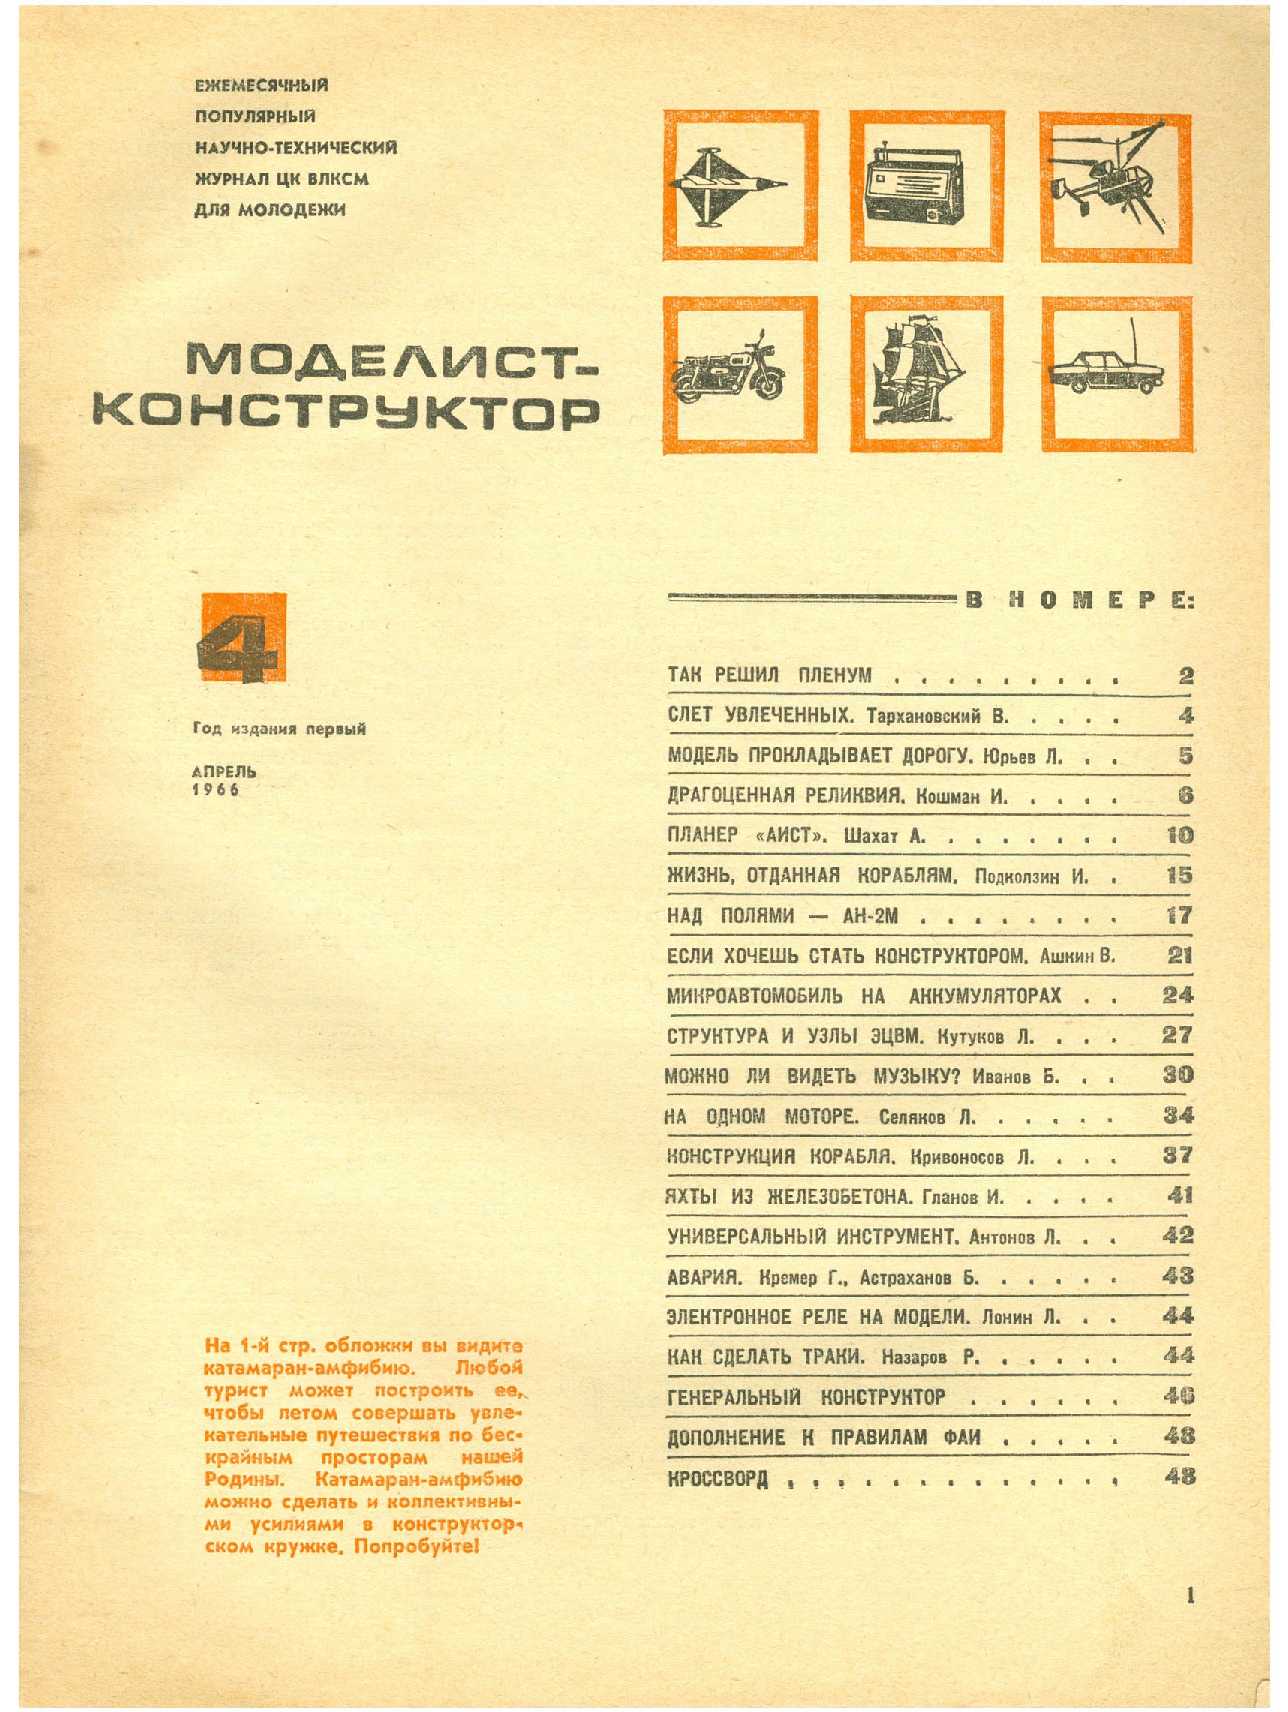 МК 4, 1966, 1 c.